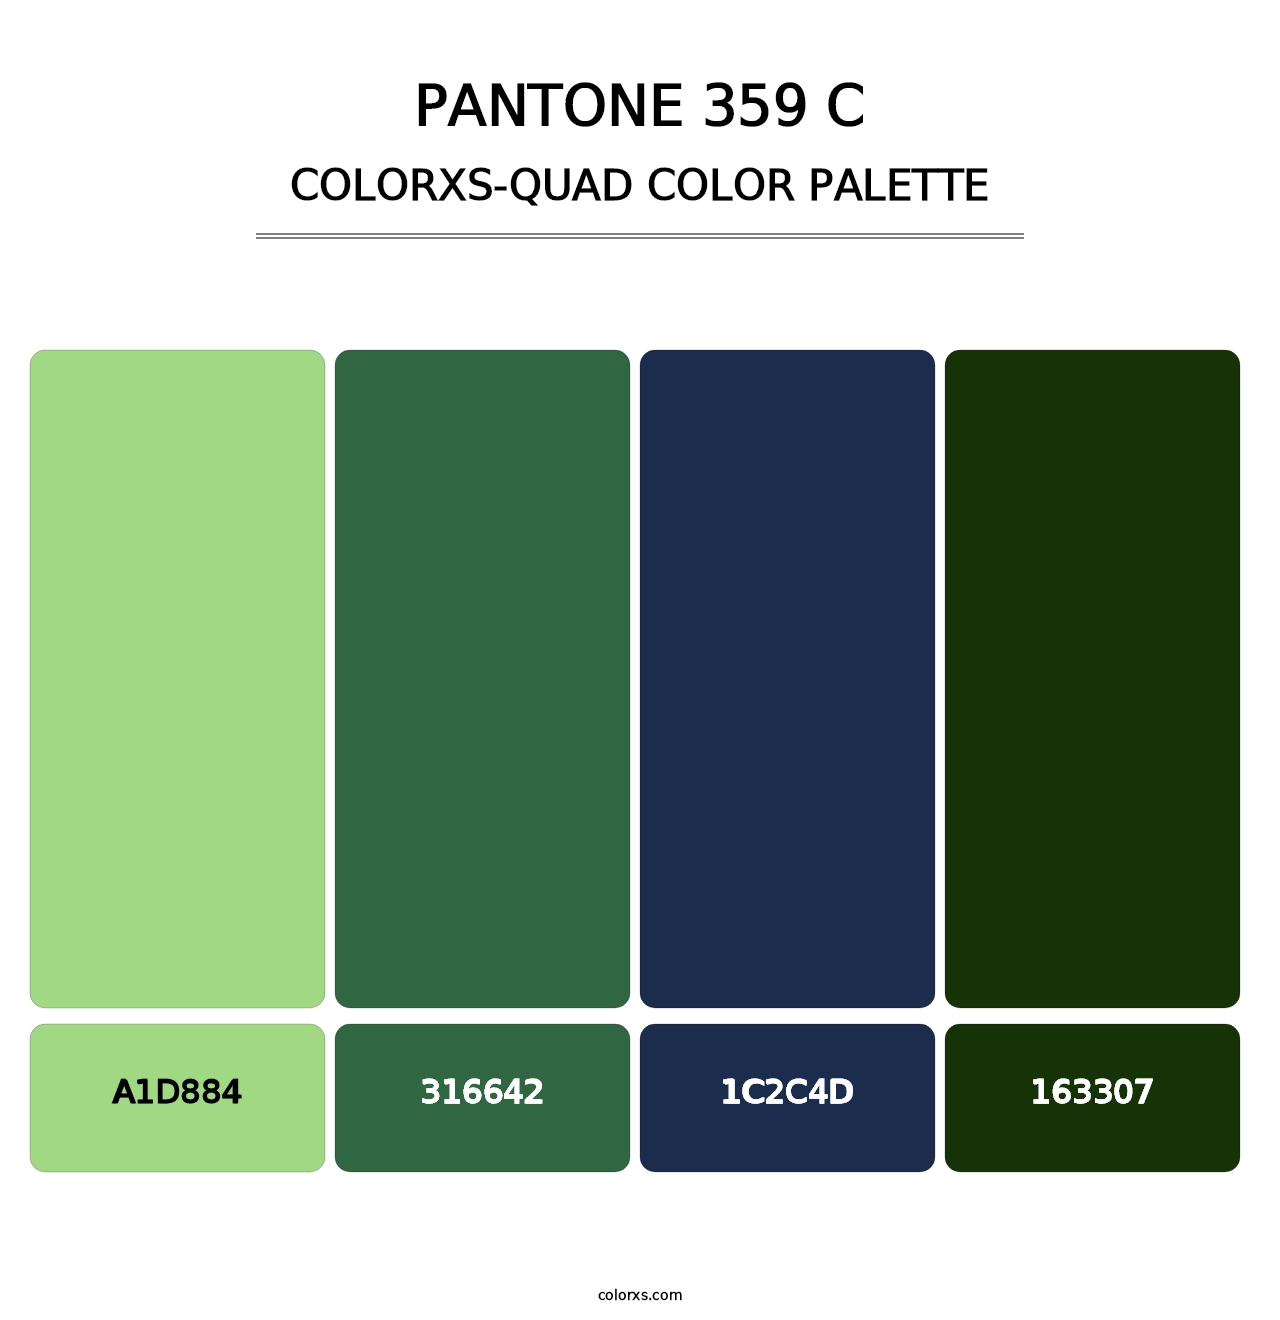 PANTONE 359 C - Colorxs Quad Palette